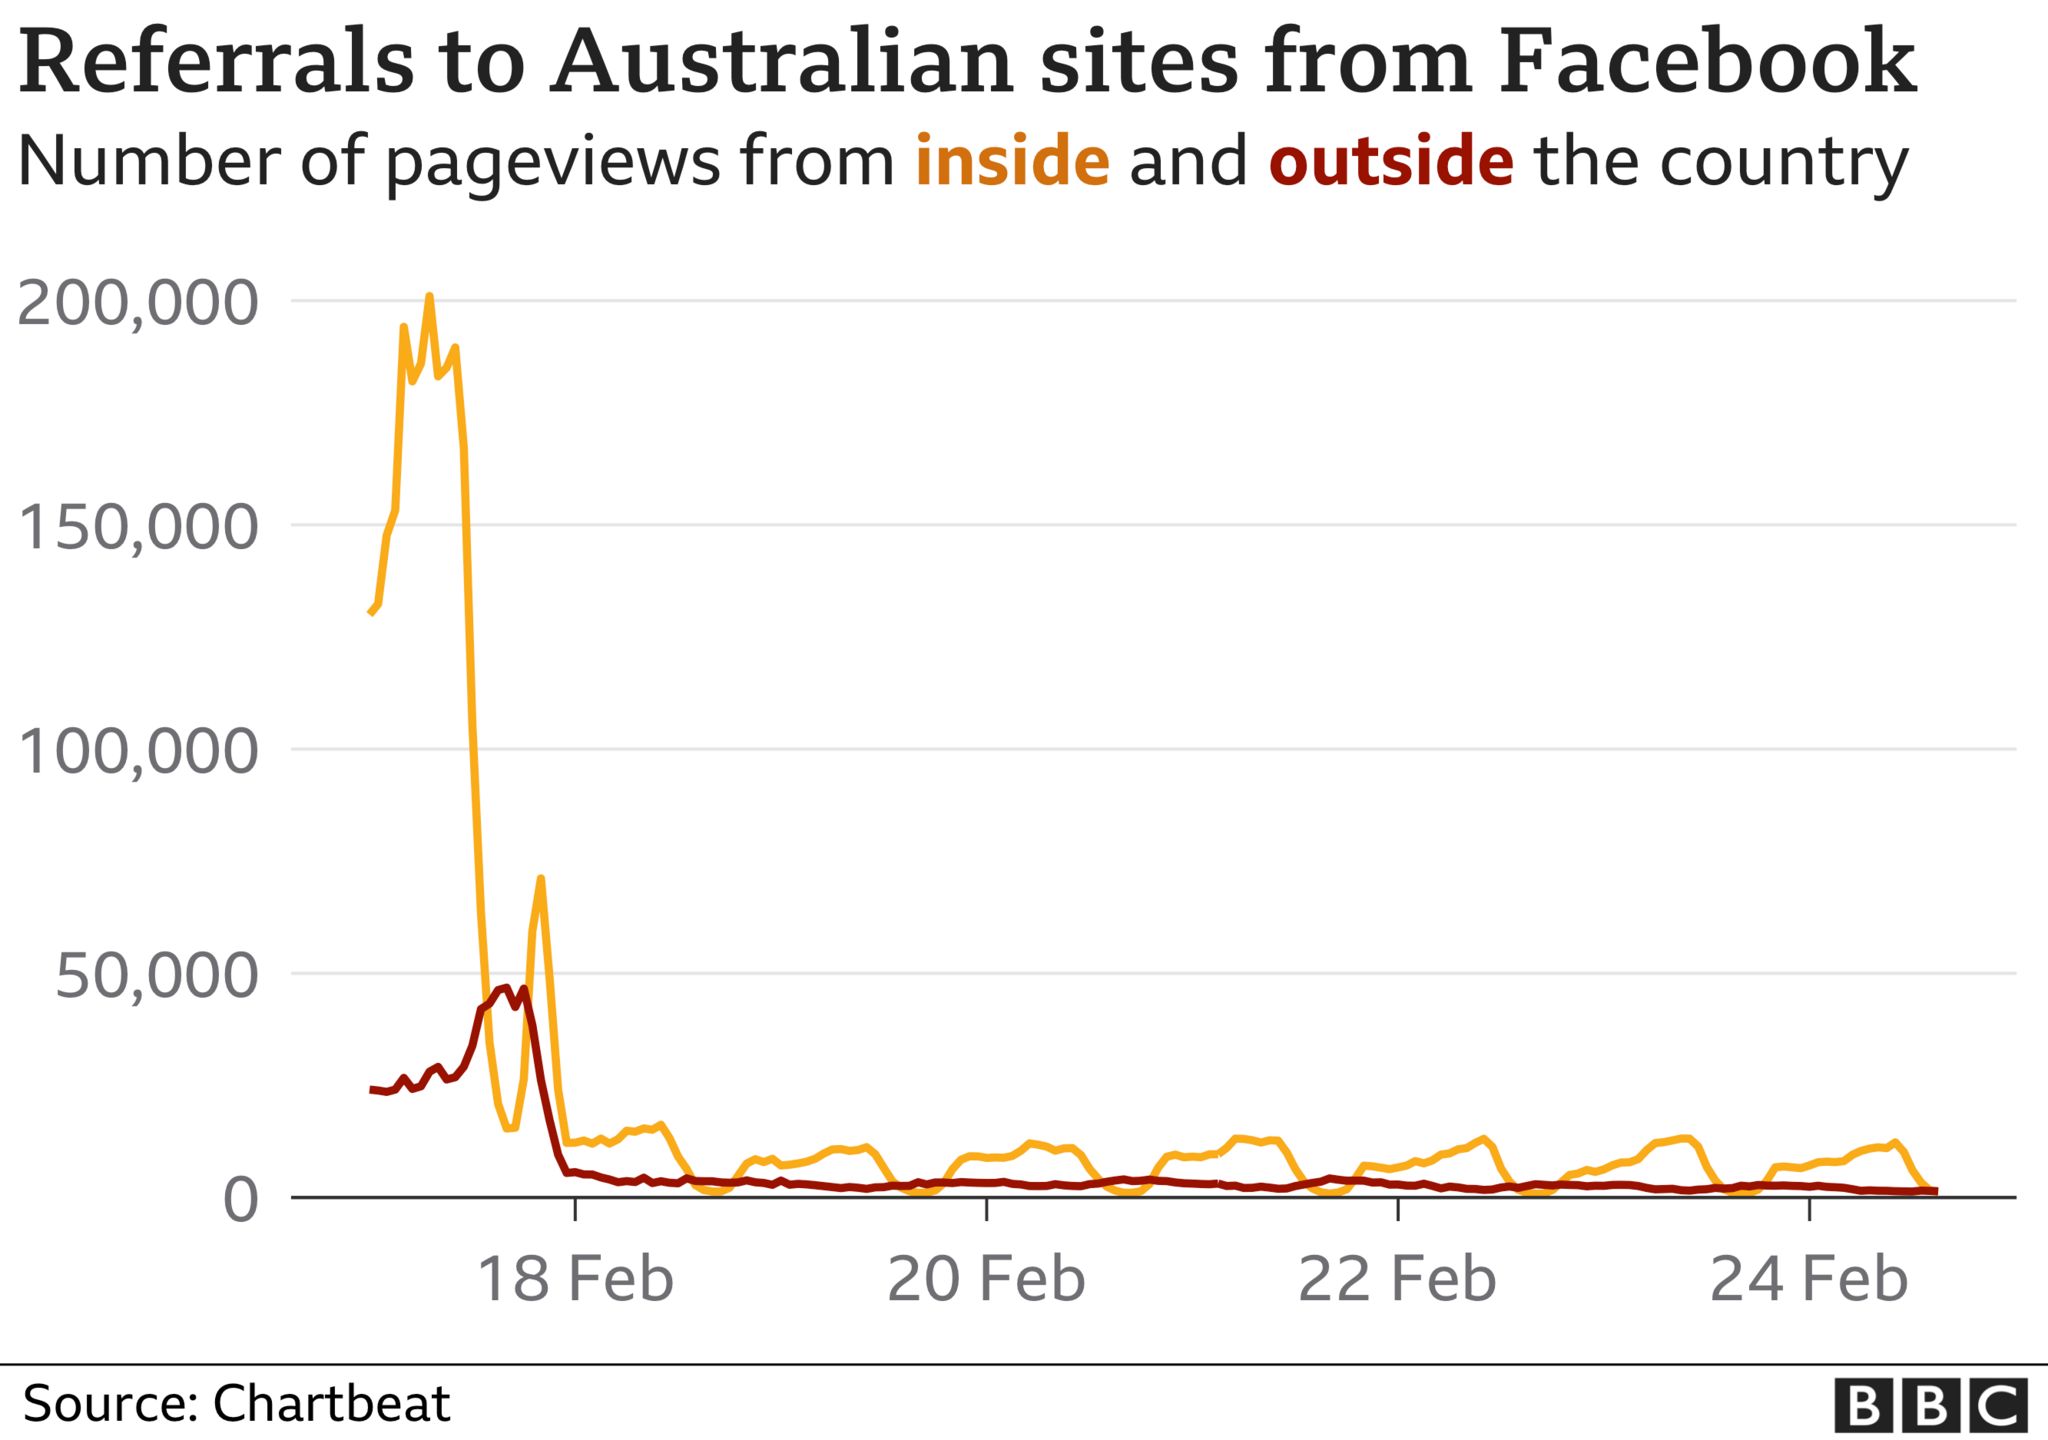 Блокировка австралийских публикаций Facebook сильно повлияла на посещаемость онлайн-сайтов